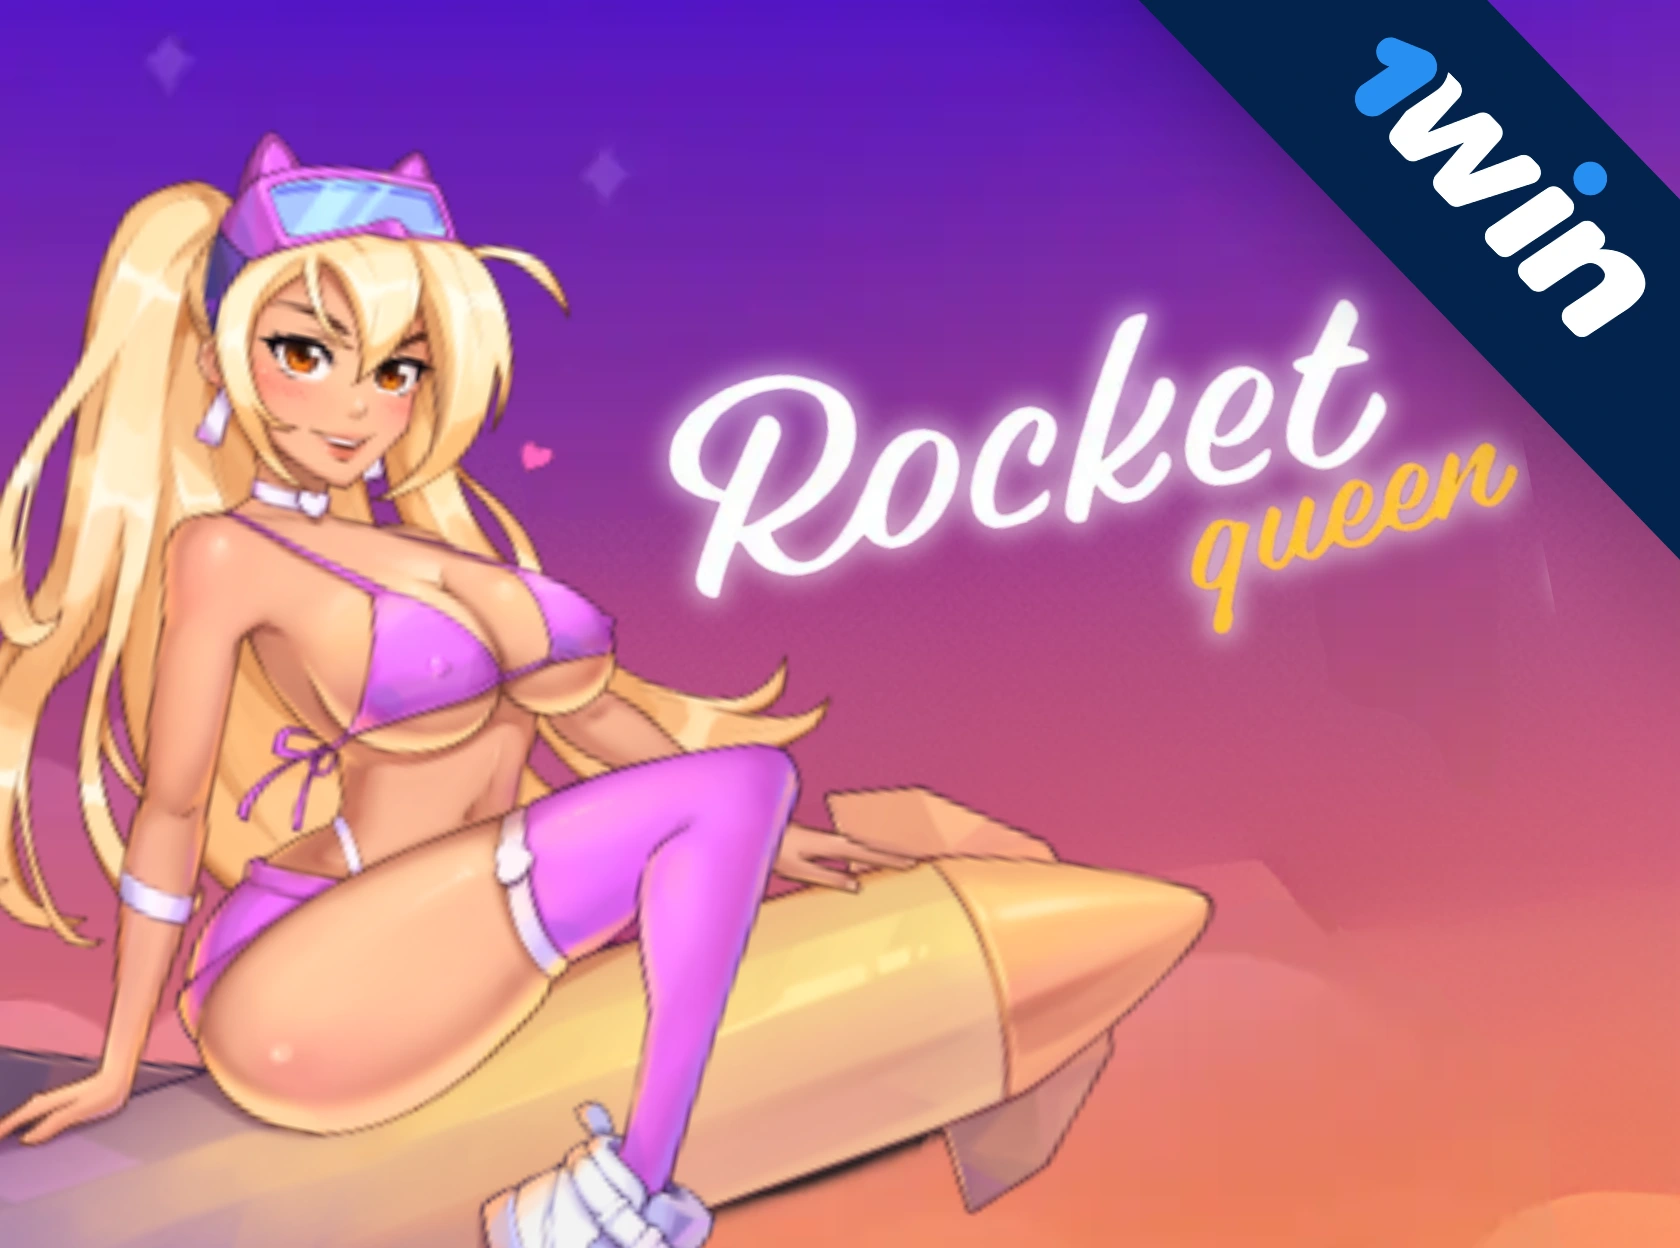 Rocket Queen - 1win's explosive hit!